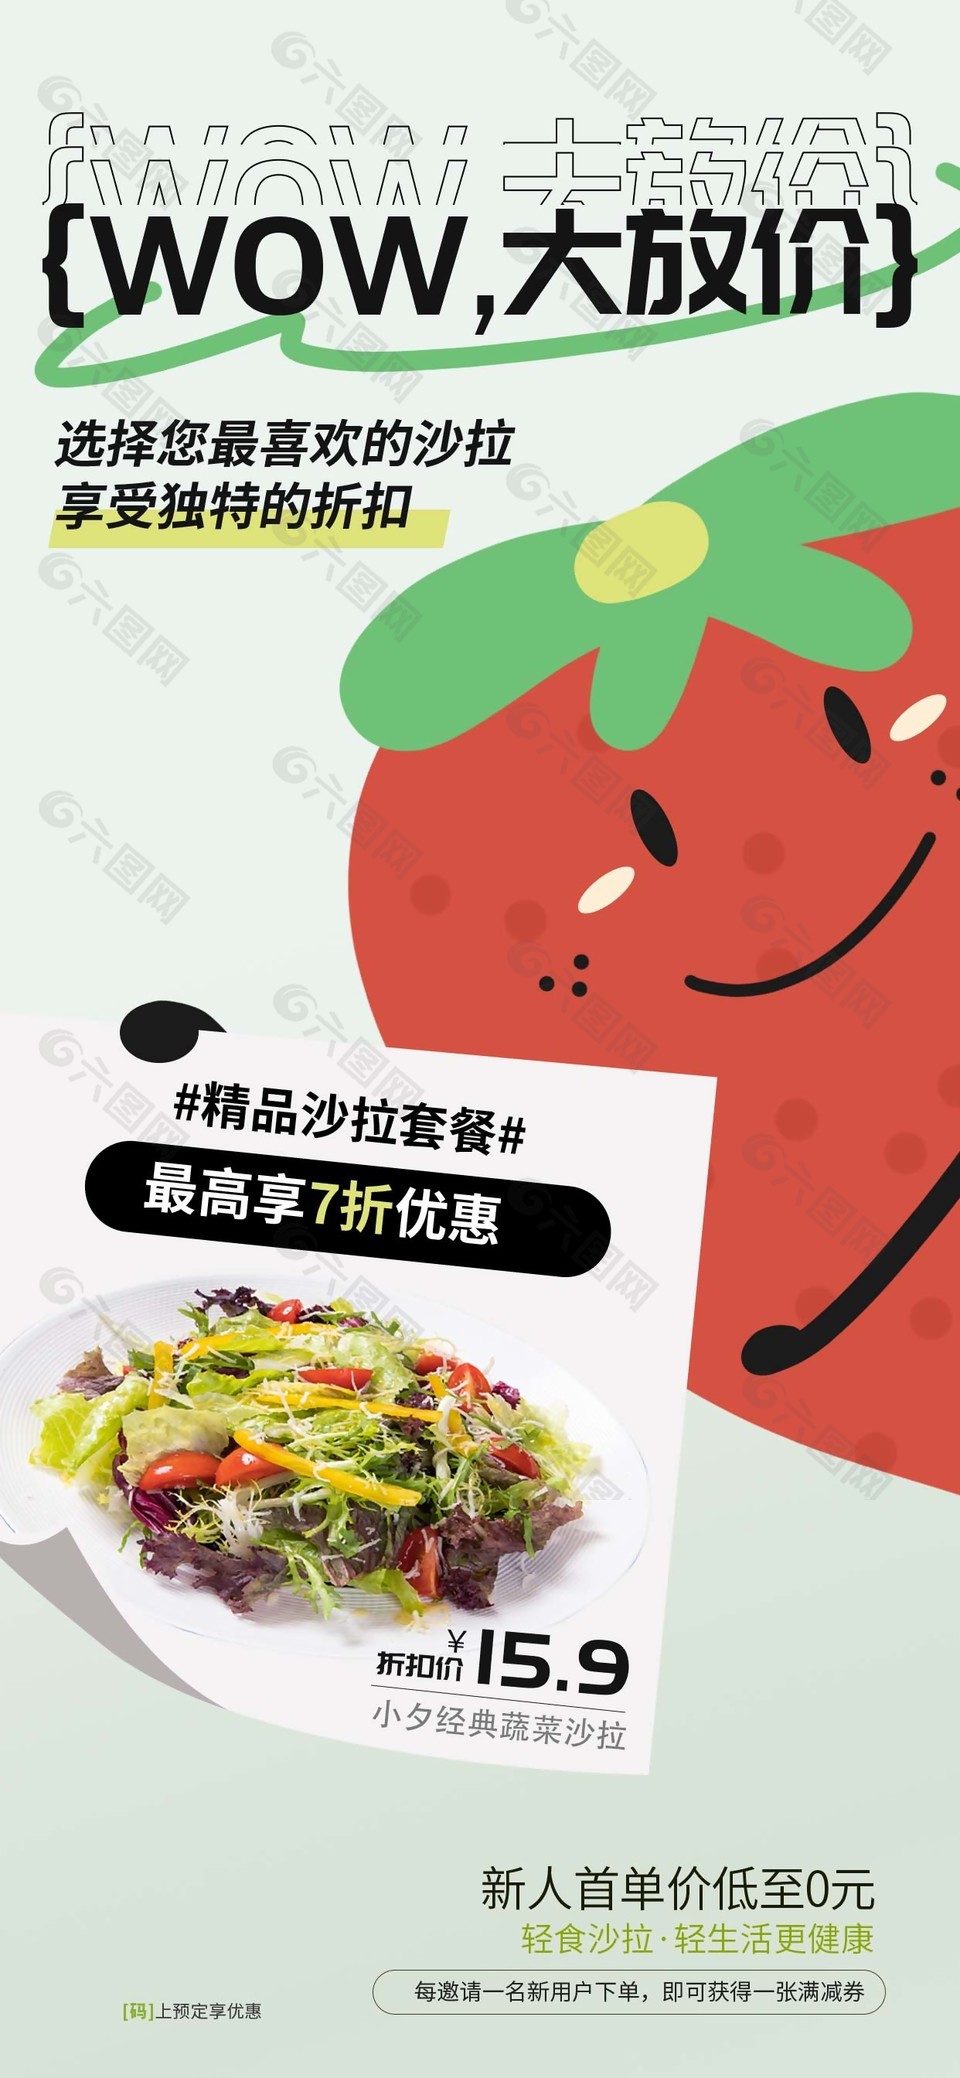 精品沙拉套餐活动草莓插画海报设计素材